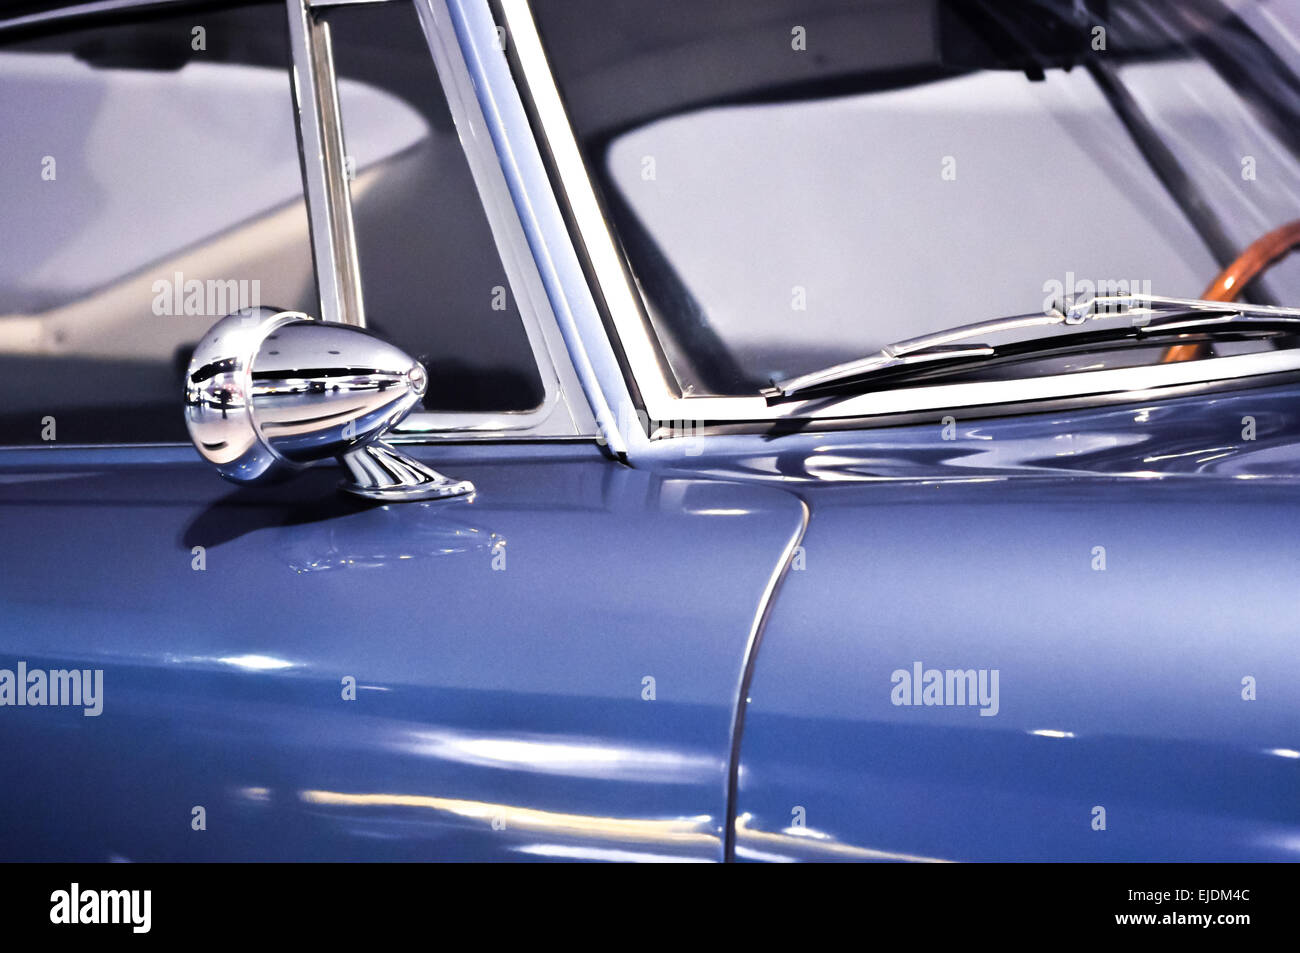 Rückspiegel und Auto Scheibenwischer auf blauen oldtimer Stockfotografie -  Alamy